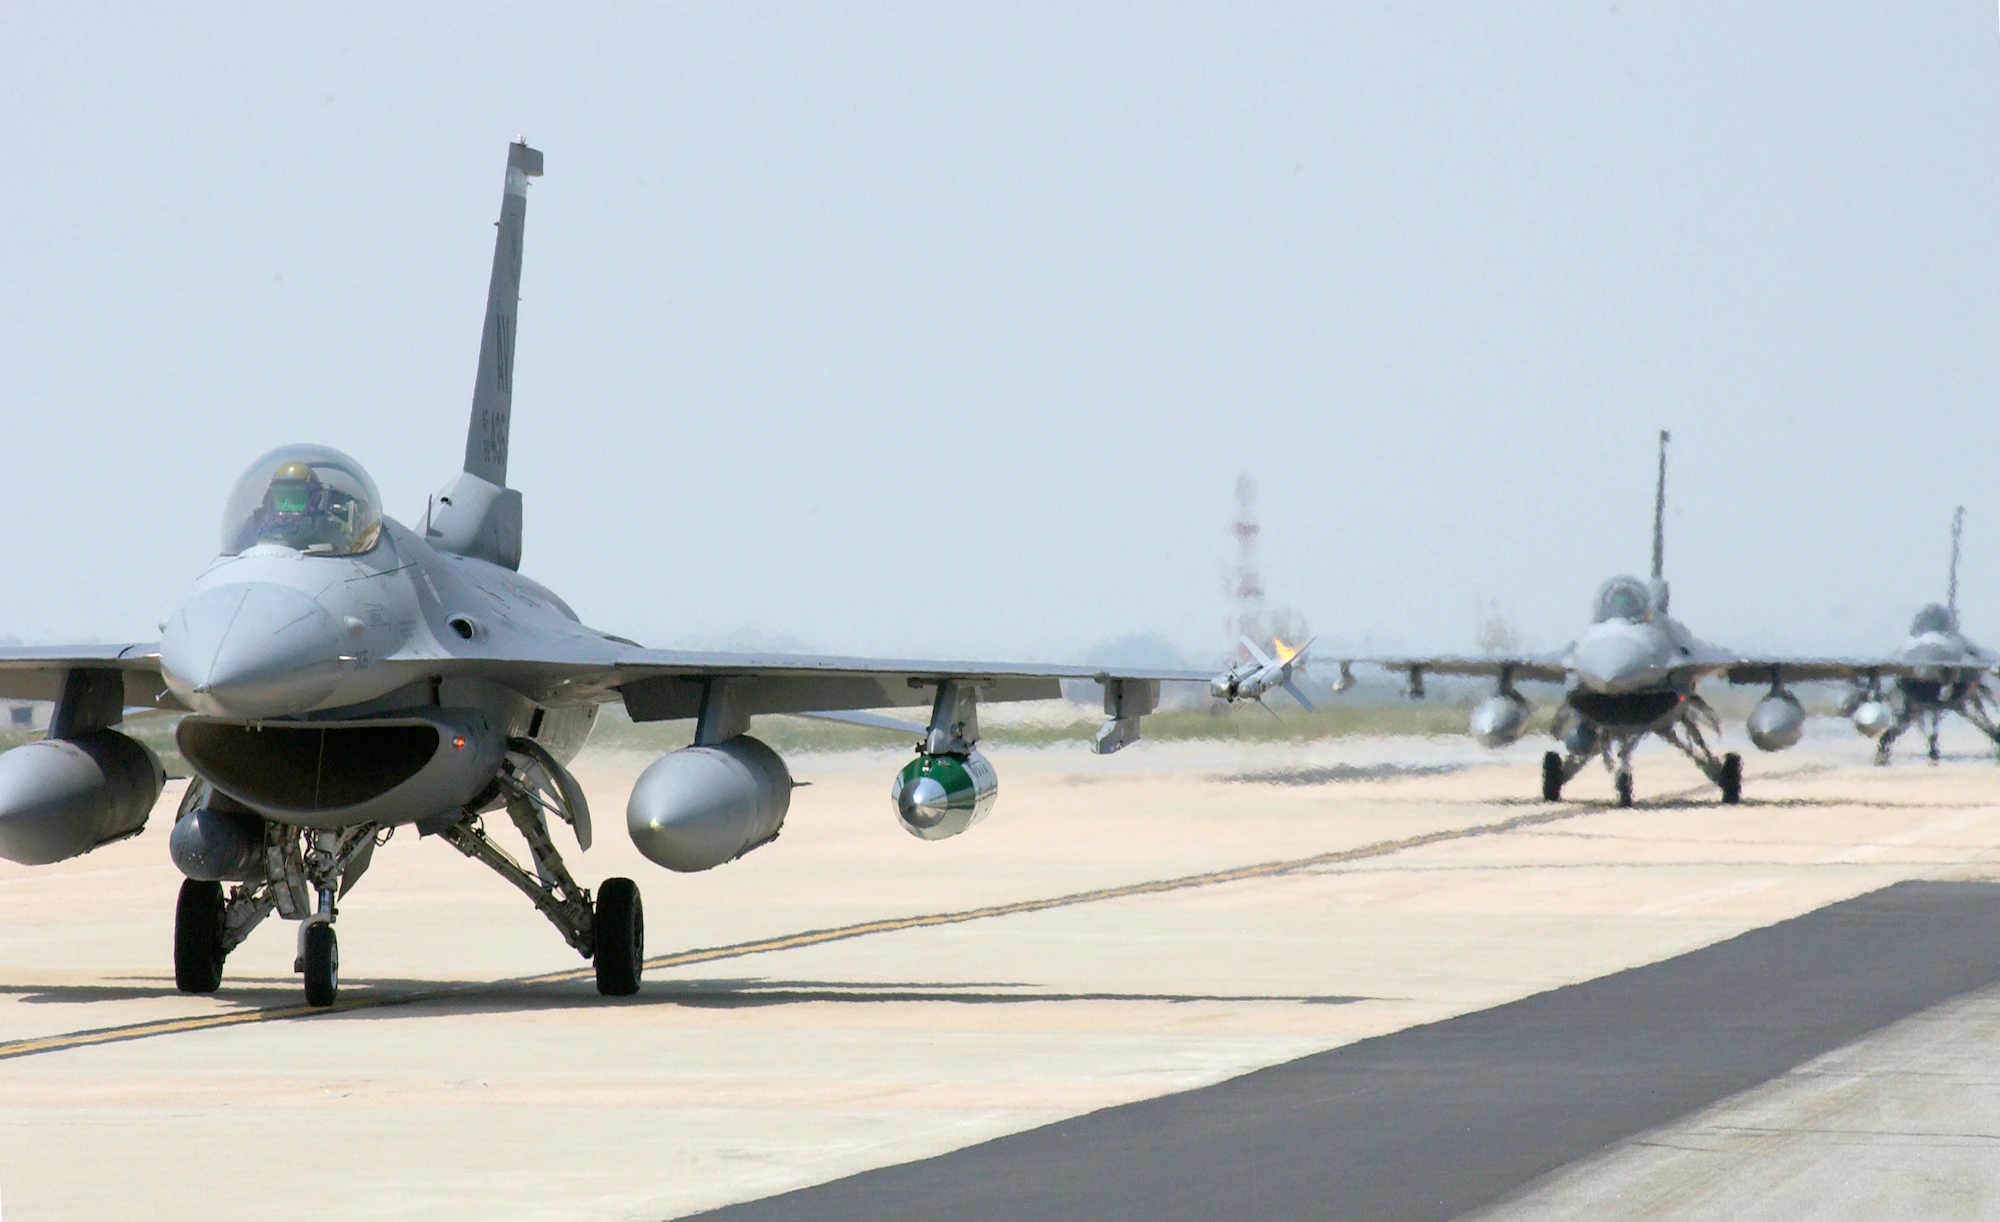 Des chasseurs F-15K et KF-16, des hélicoptères d'attaque Apache et Cobra, des avions d'attaque KA-1 ont poursuivi une volée d'oiseaux en Corée du Sud, les prenant pour des drones de la RPDC.